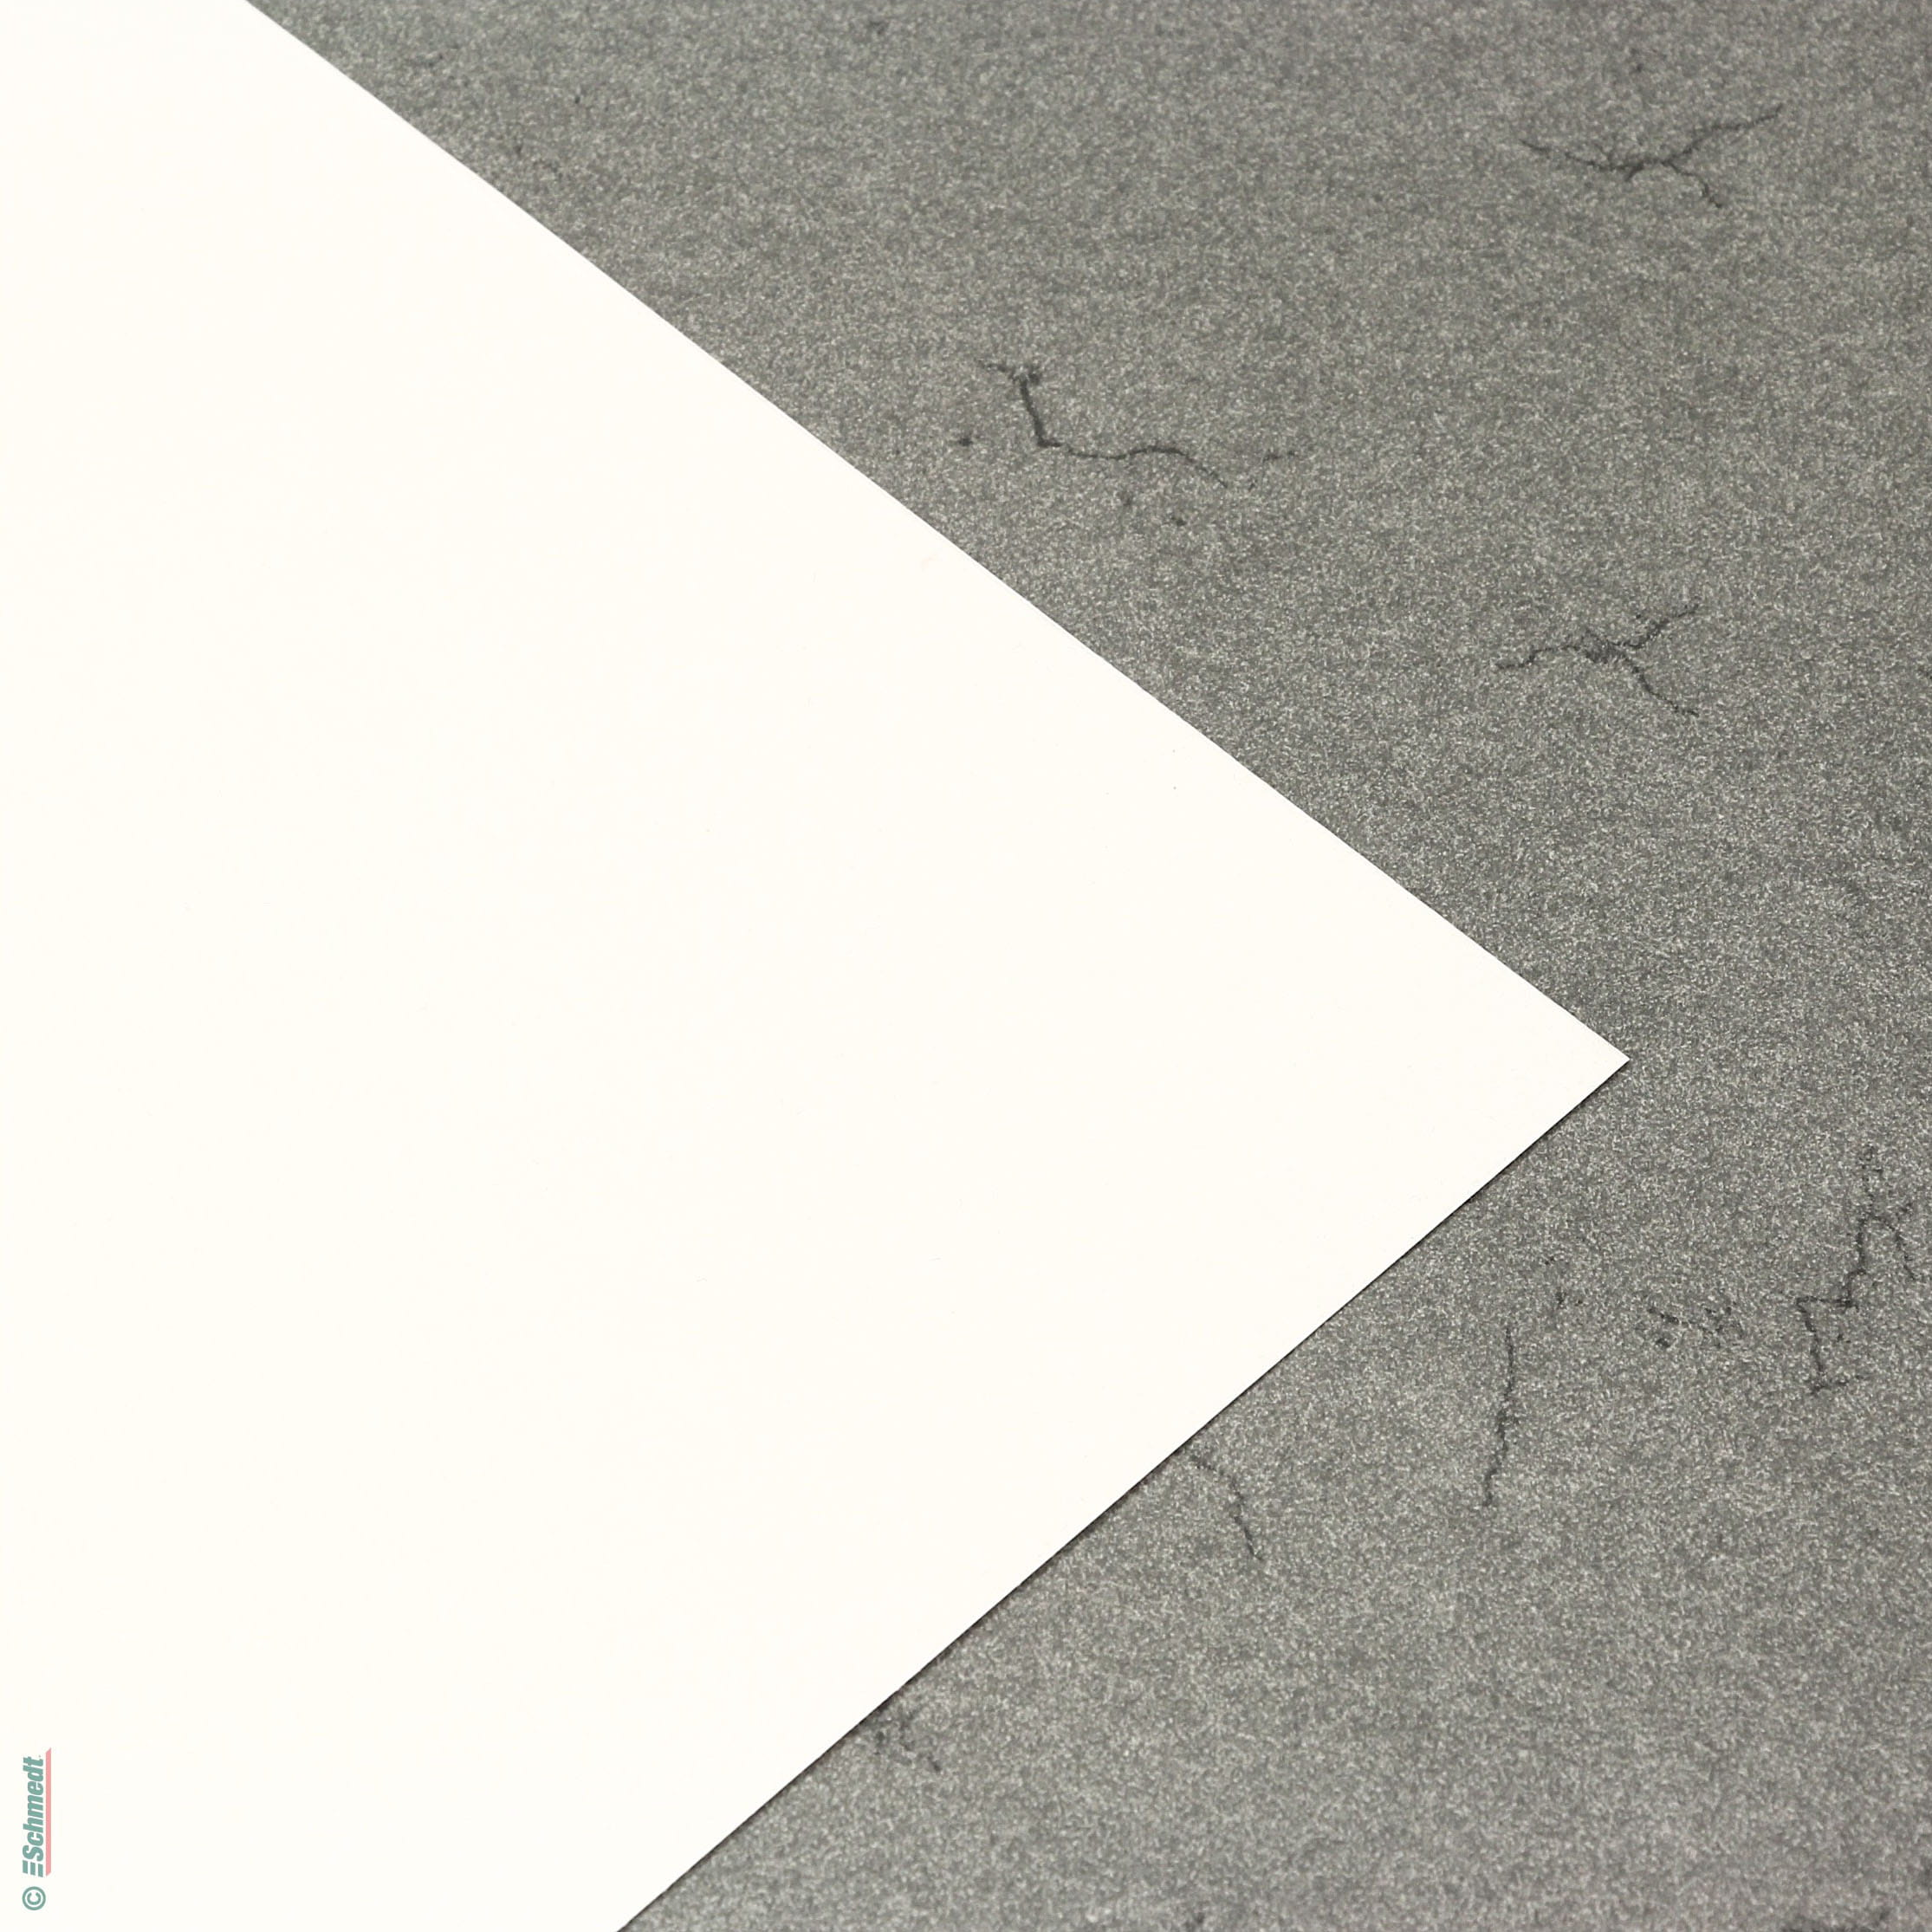 Vinyle imprimable – Lot de 25 feuilles de papier autocollant brillant  imprimable pour imprimante à jet d'encre pour Epson (21,6 x 27,9 cm